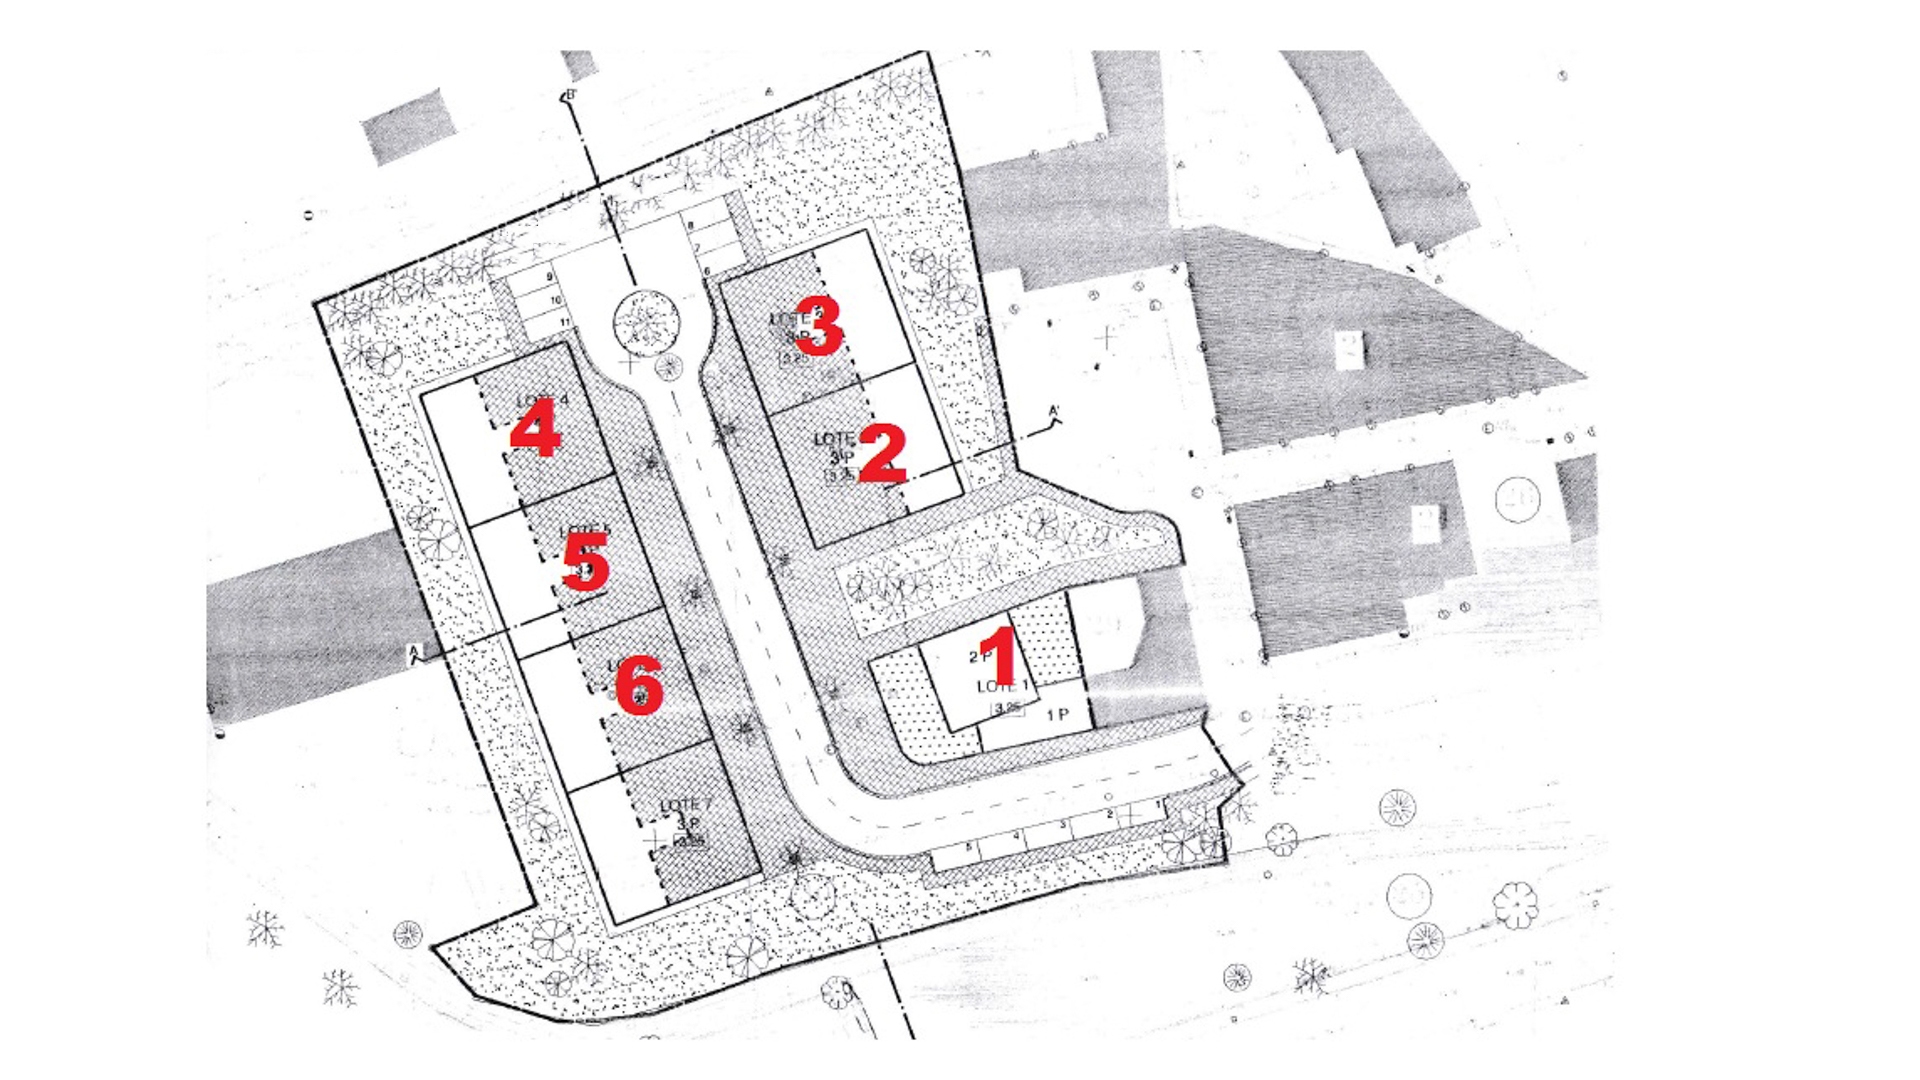 Stadtentwicklungsprojekt in Parchal | LG1316 Sechs benachbarte Grundstücke mit der Kapazität zum Bau einer großen, zweistöckigen, freistehenden Villa sowie 5 Wohnblocks mit insgesamt 20 individuellen 2 und 3 SZ Apartments.